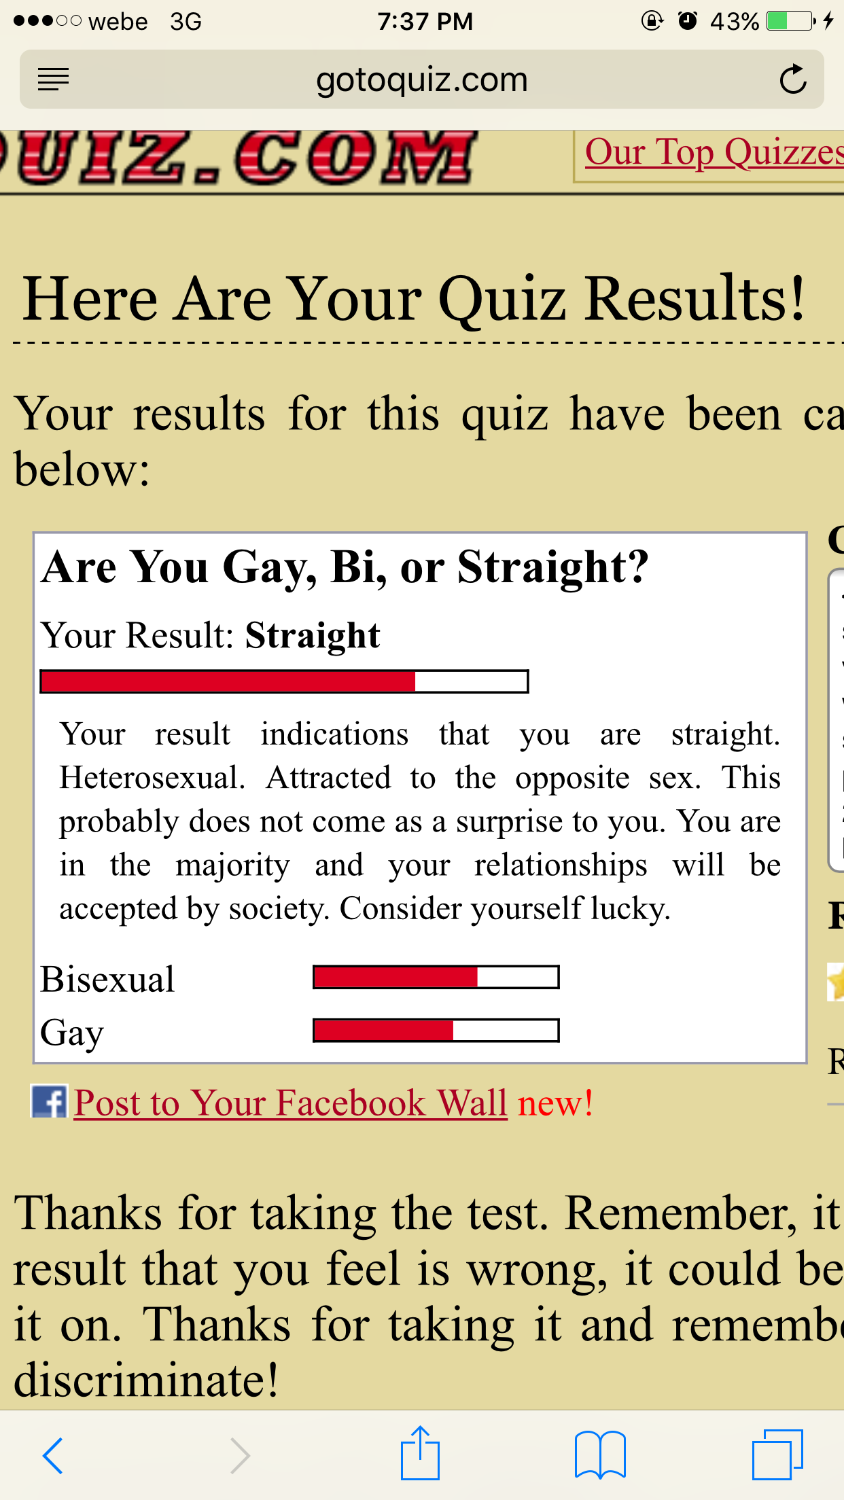 A bisexual quiz